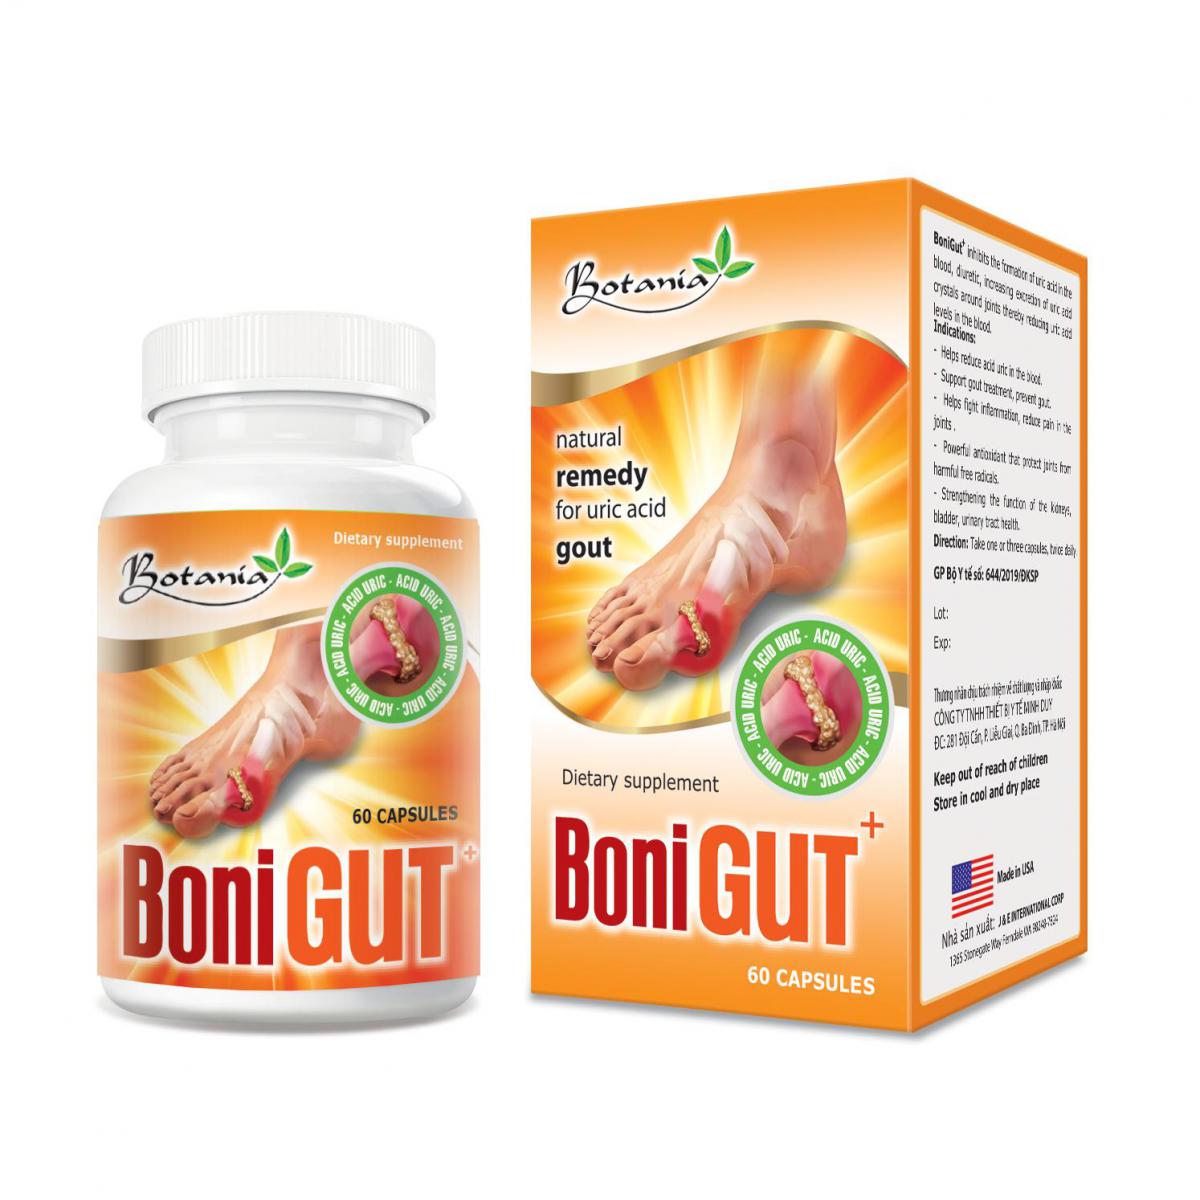 BoniGut +- Giải pháp tối ưu cho người bệnh gút